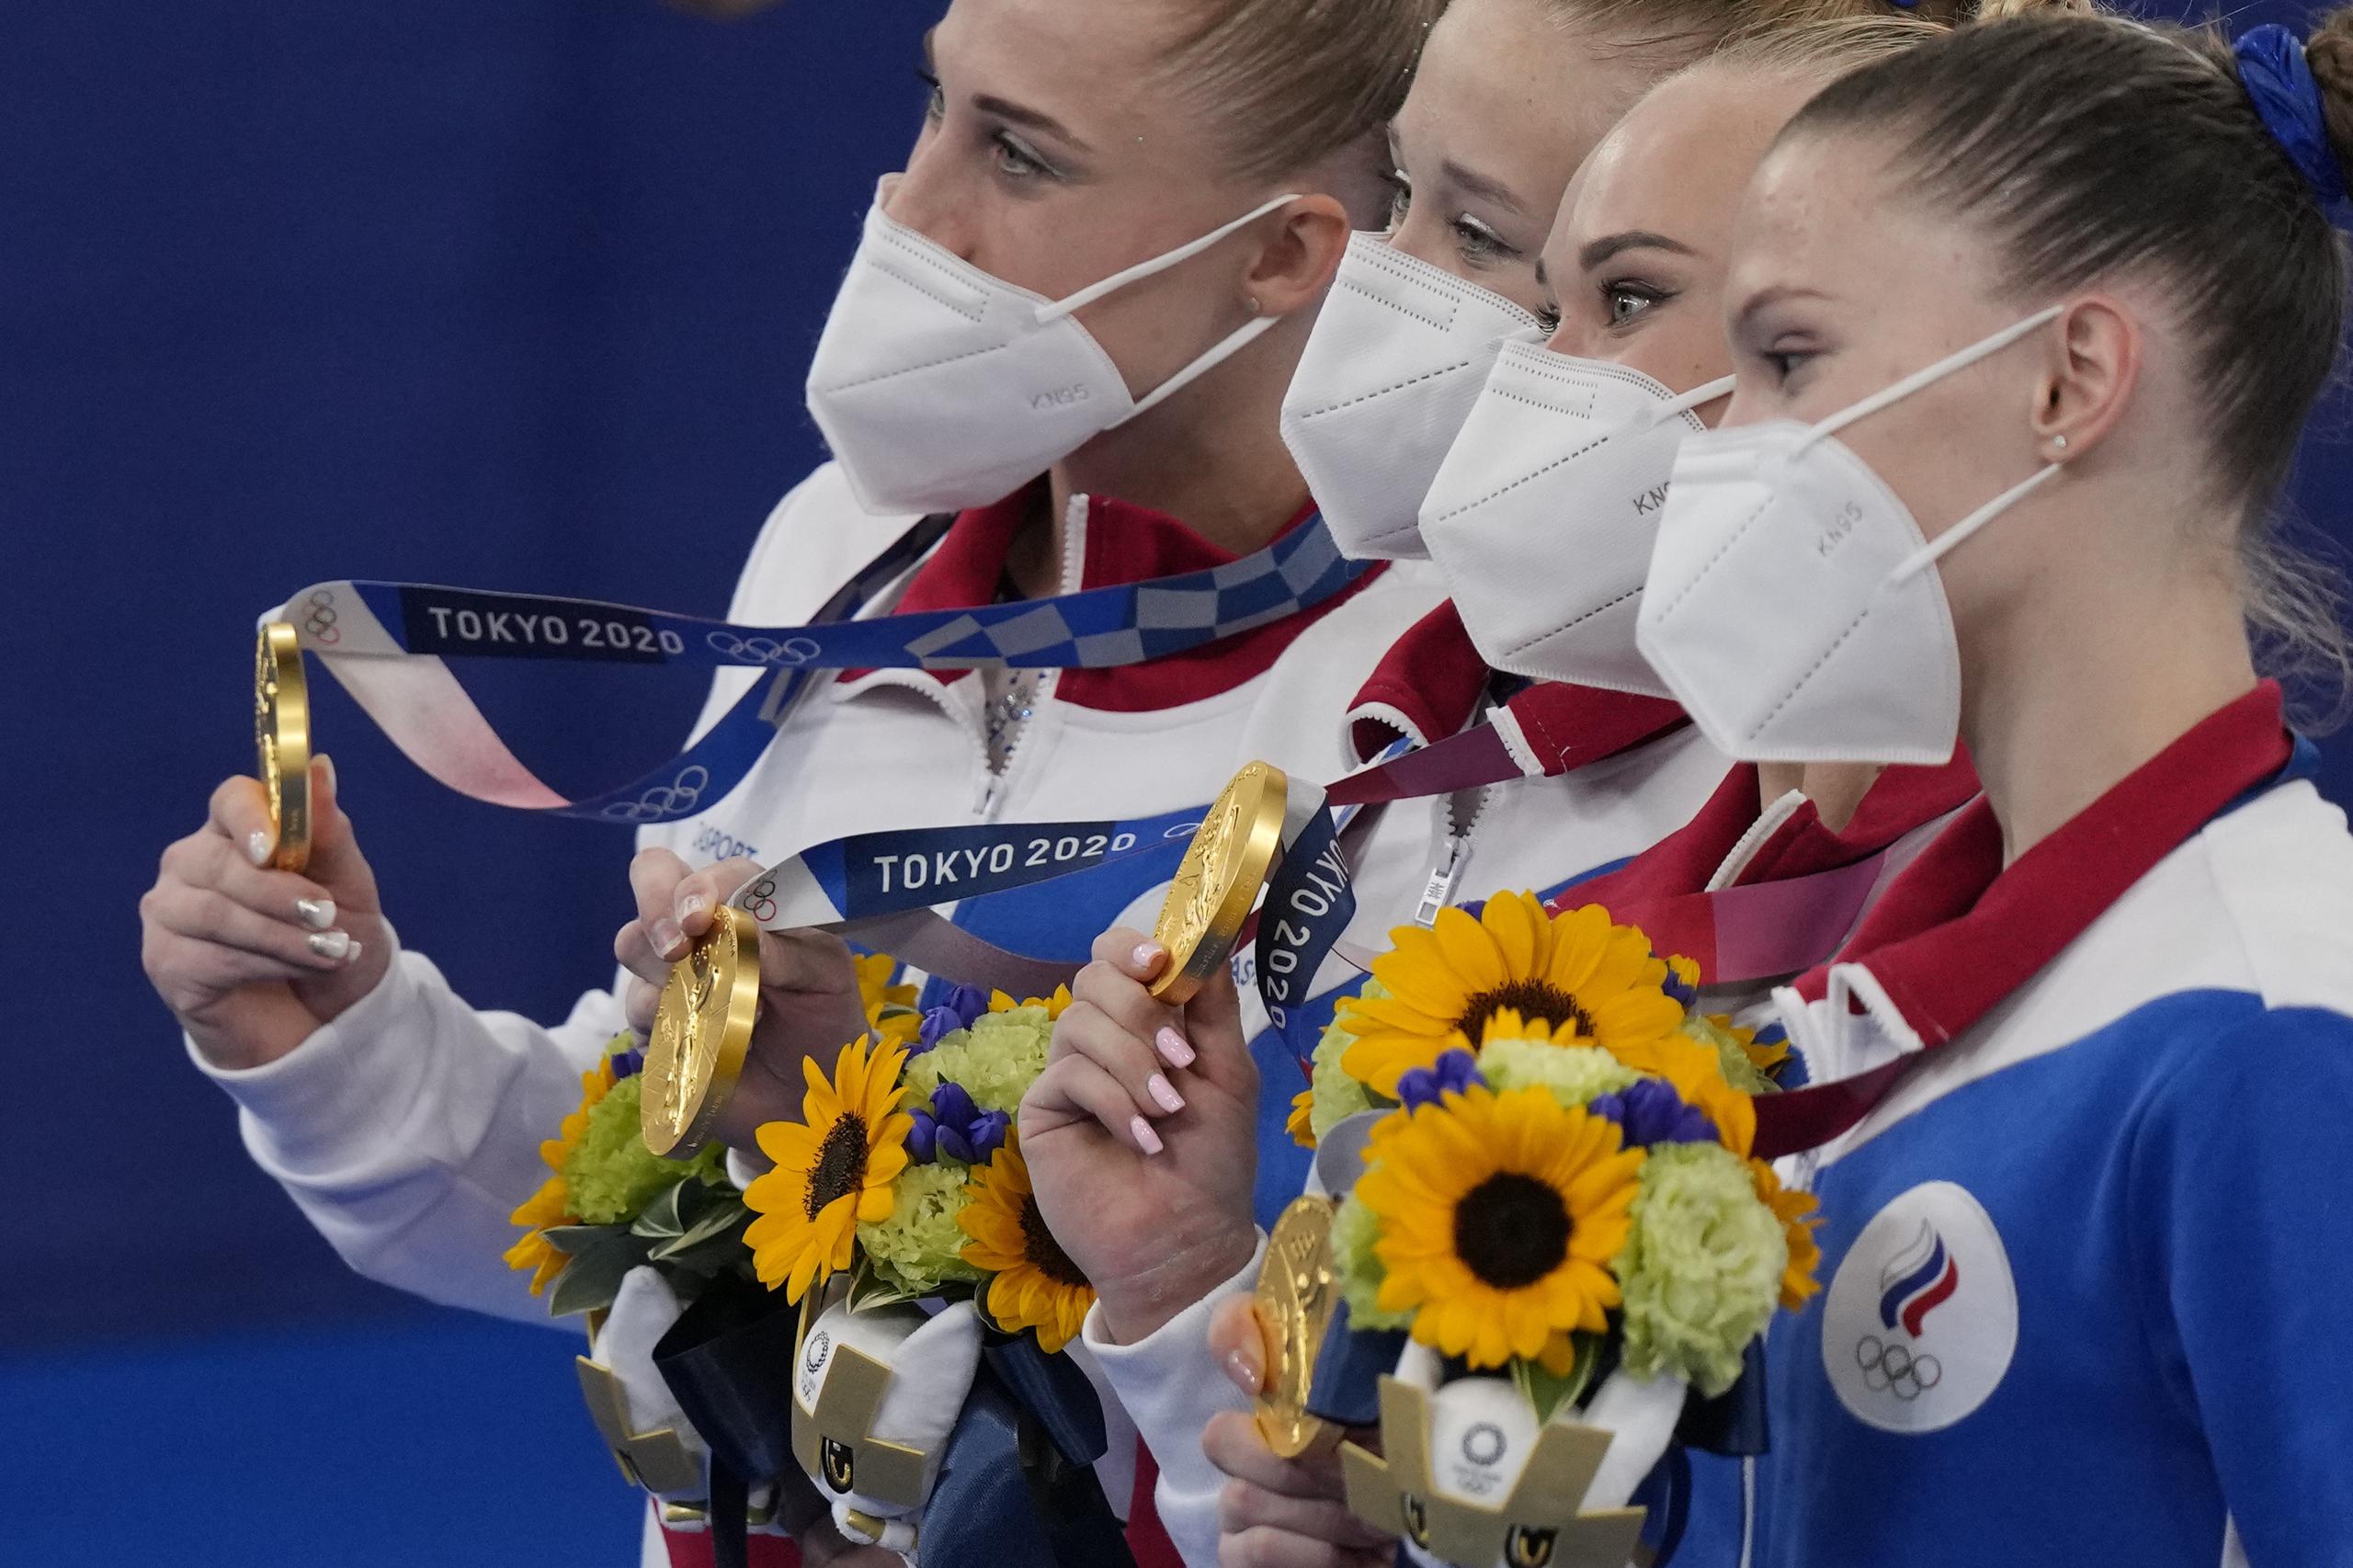 El equipo ruso que compite en Tokio 2020 bajo la bandera del Comité Olímpico de Rusia, ganó el oro por equipo en la gimnasia artística. Sus atletas son, desde la izquierda, Liliia Akhaimova, Viktoriia Listunova, Angelina Melnikova y Vladislava Urazova.